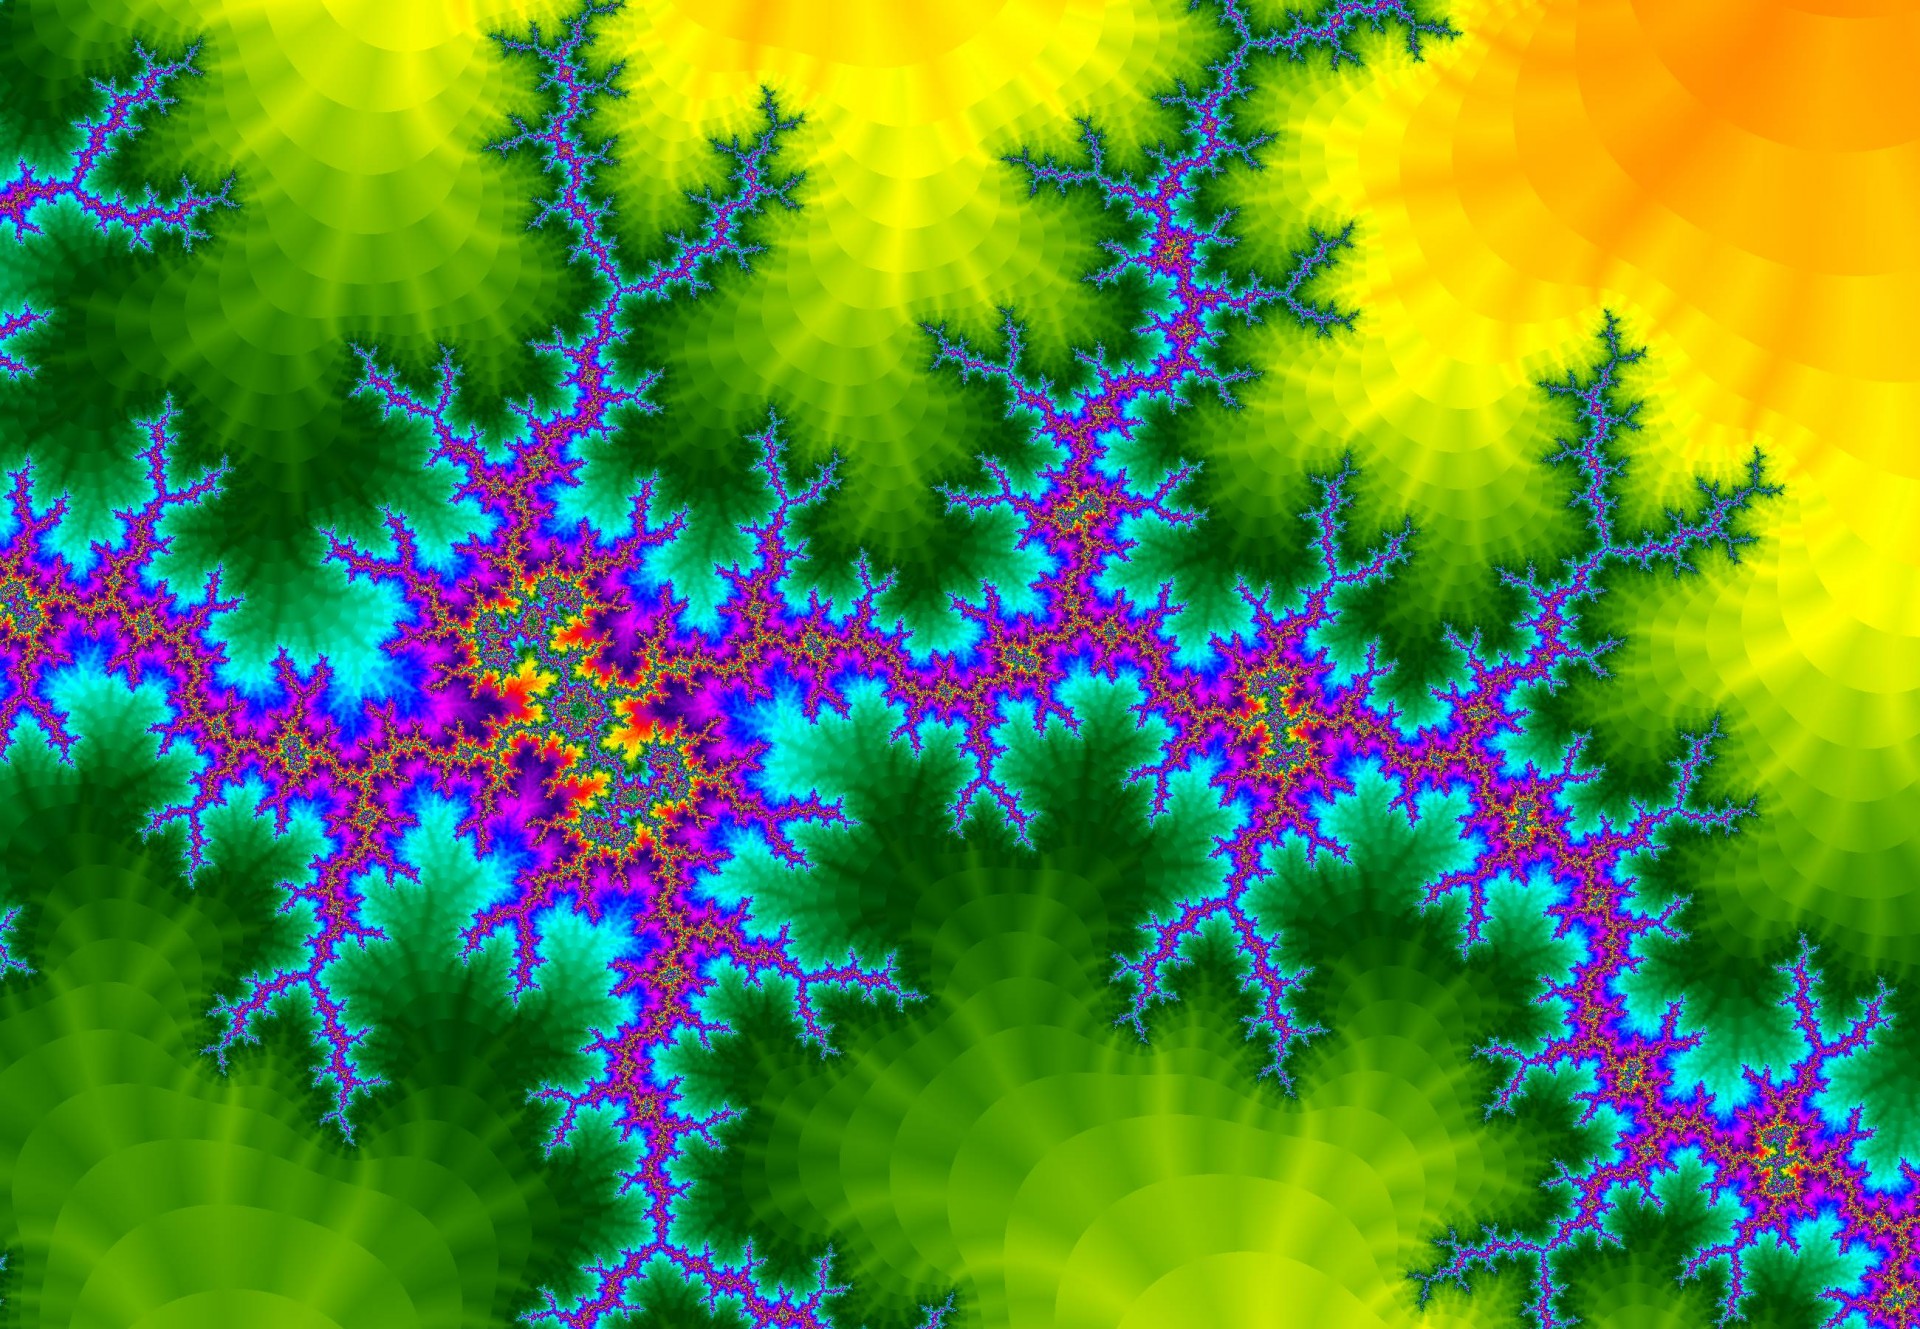 astronira digital fractal  fractal forge free photo